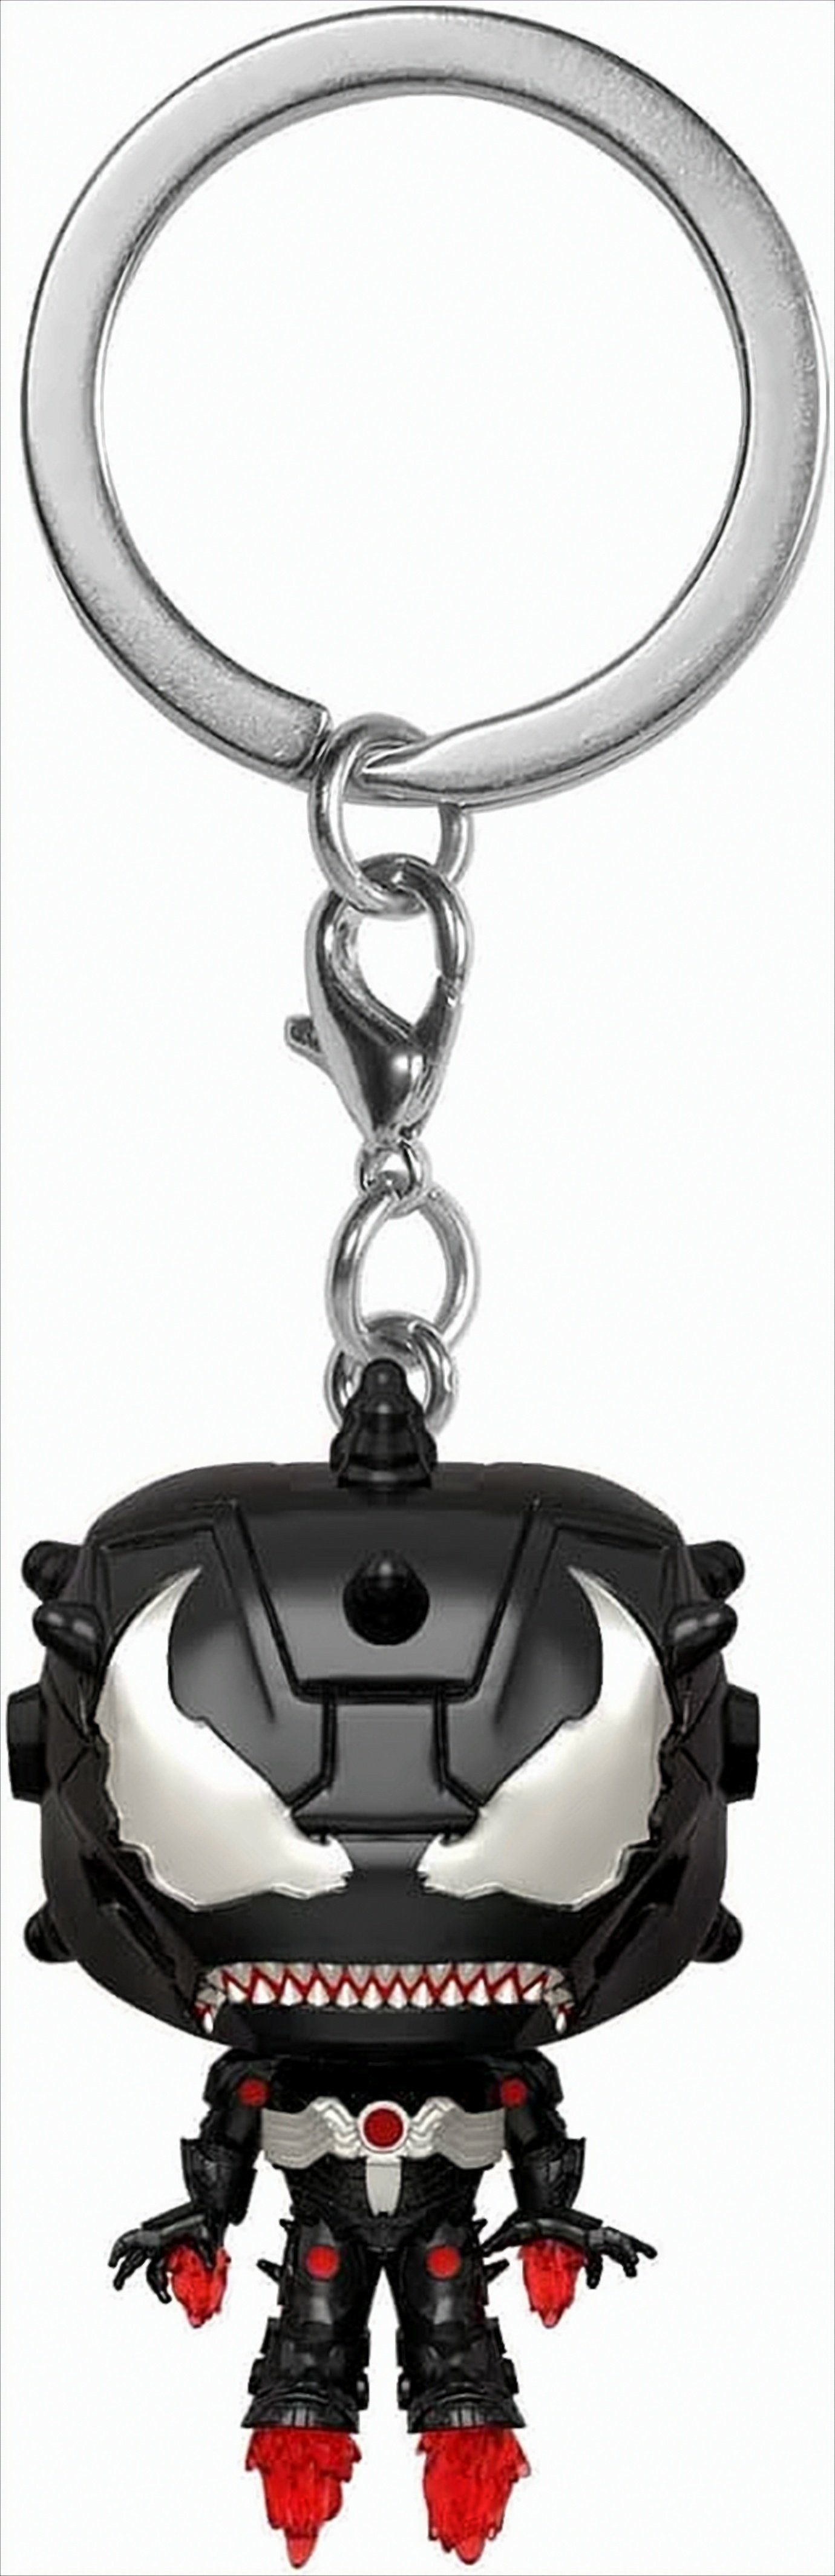 Funko Spielfigur POP Keychain Marvel Venom - Iron Man